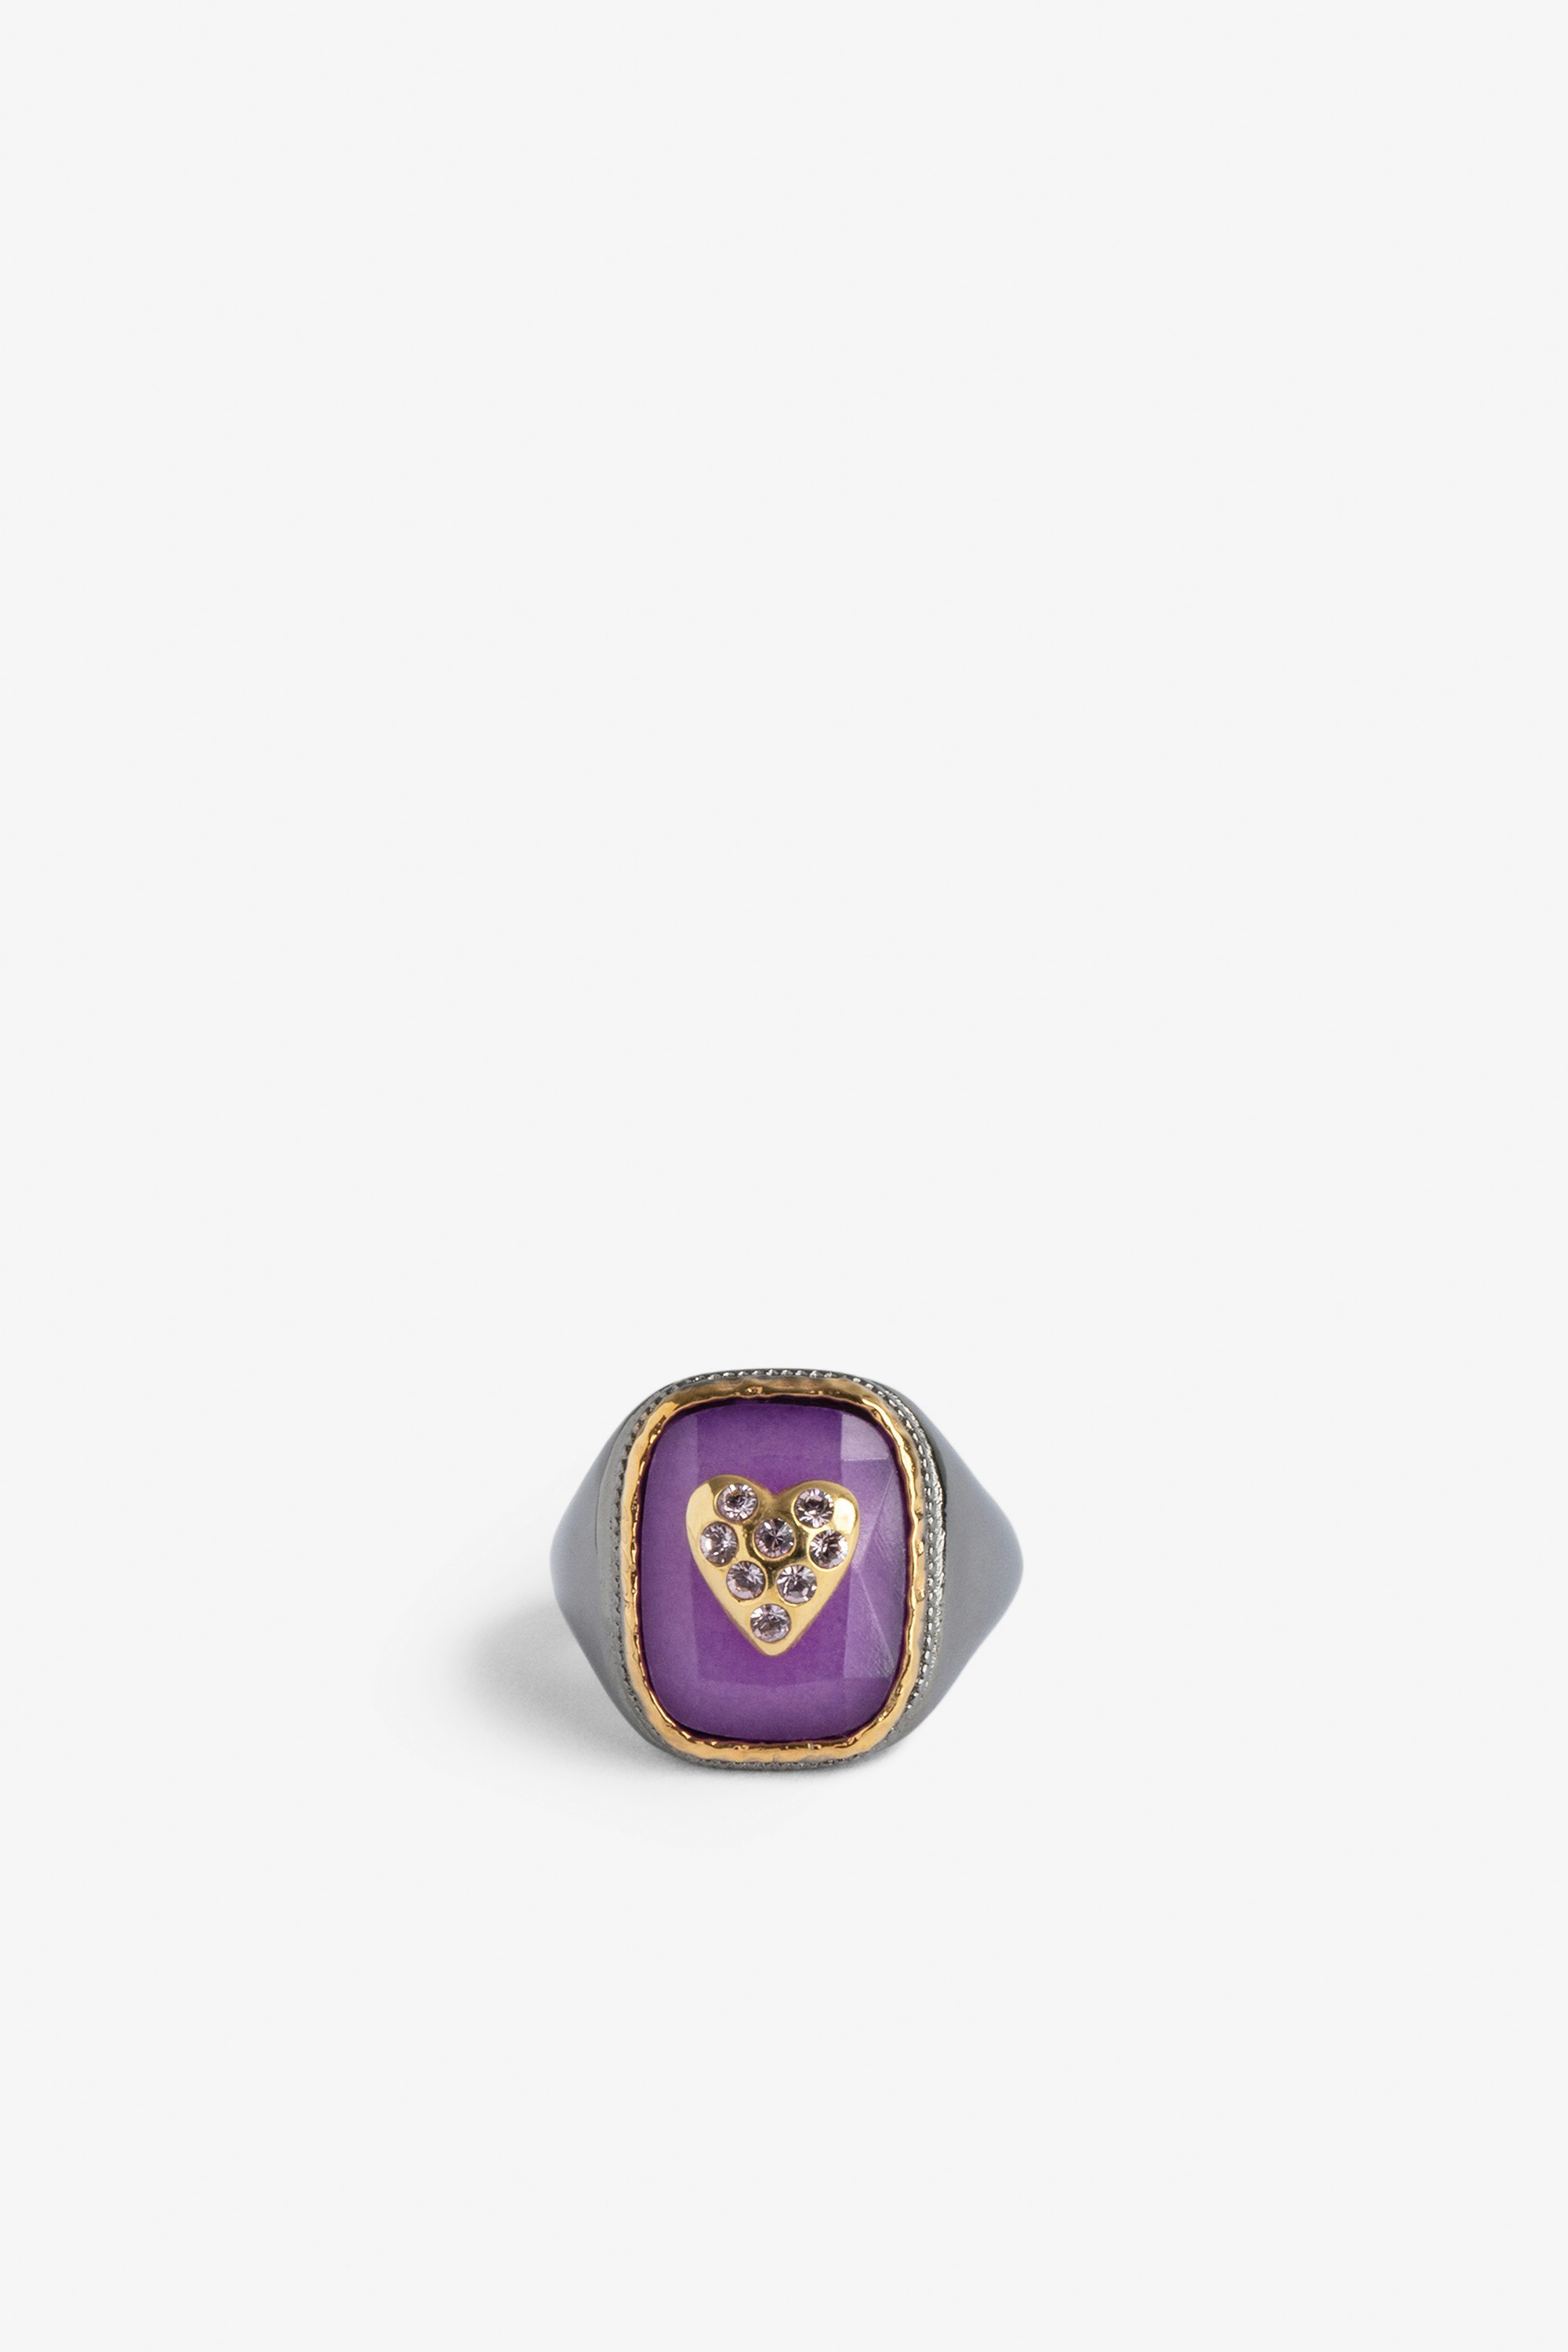 Anillo de sello Heart Anillo de sello con una piedra violeta engastada con un corazón de latón dorado.